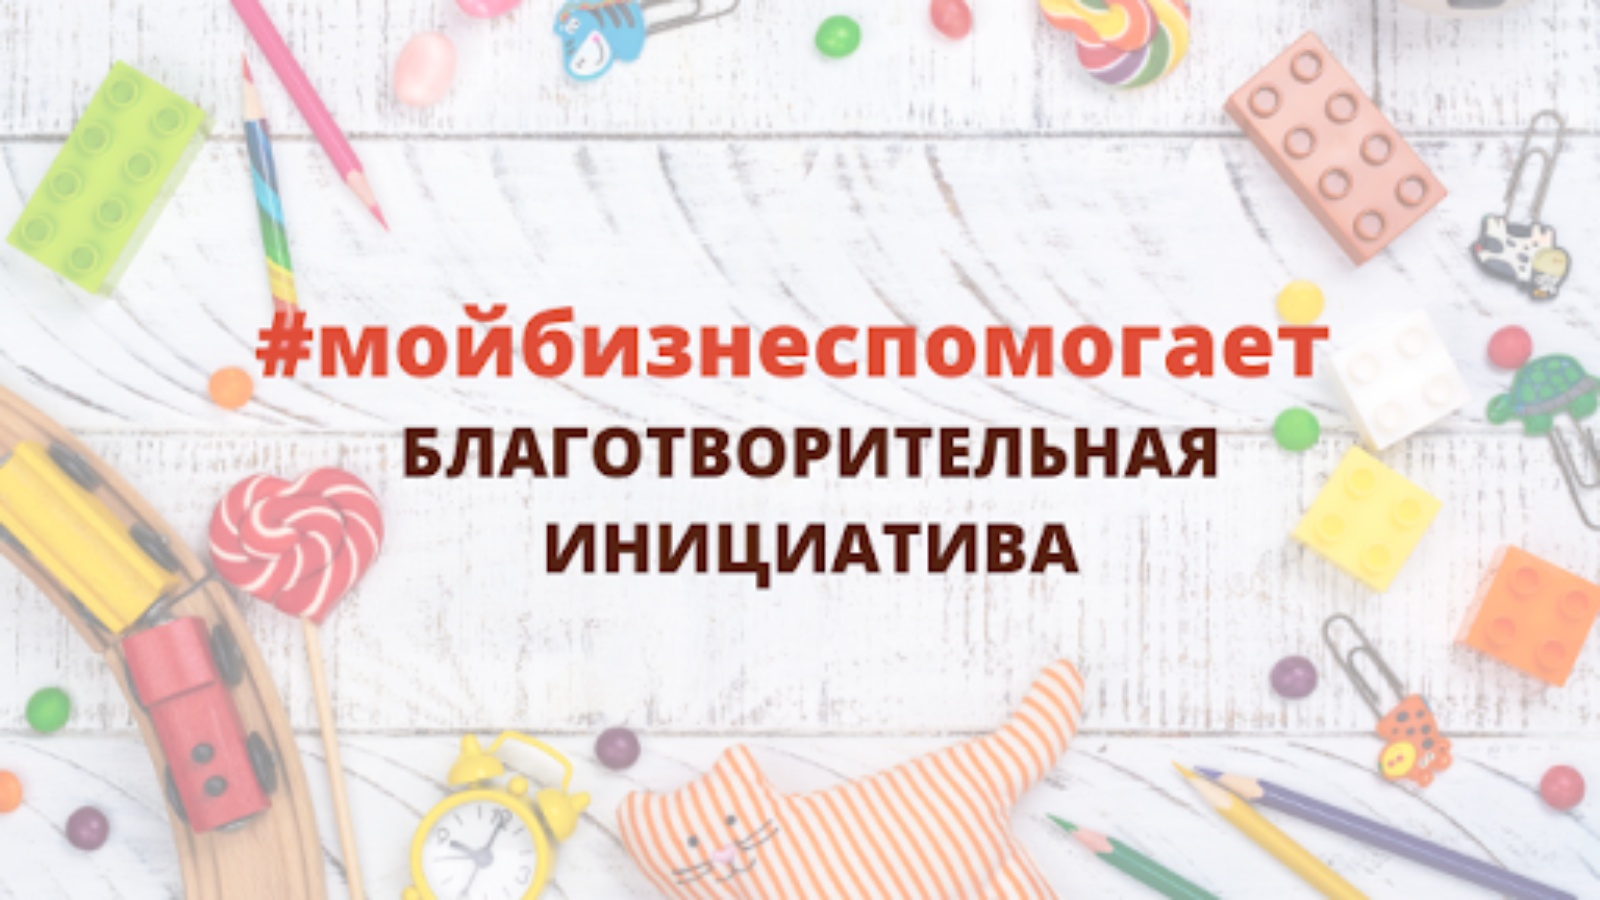 В Татарстане дан старт благотворительной акции «Мой бизнес помогает»